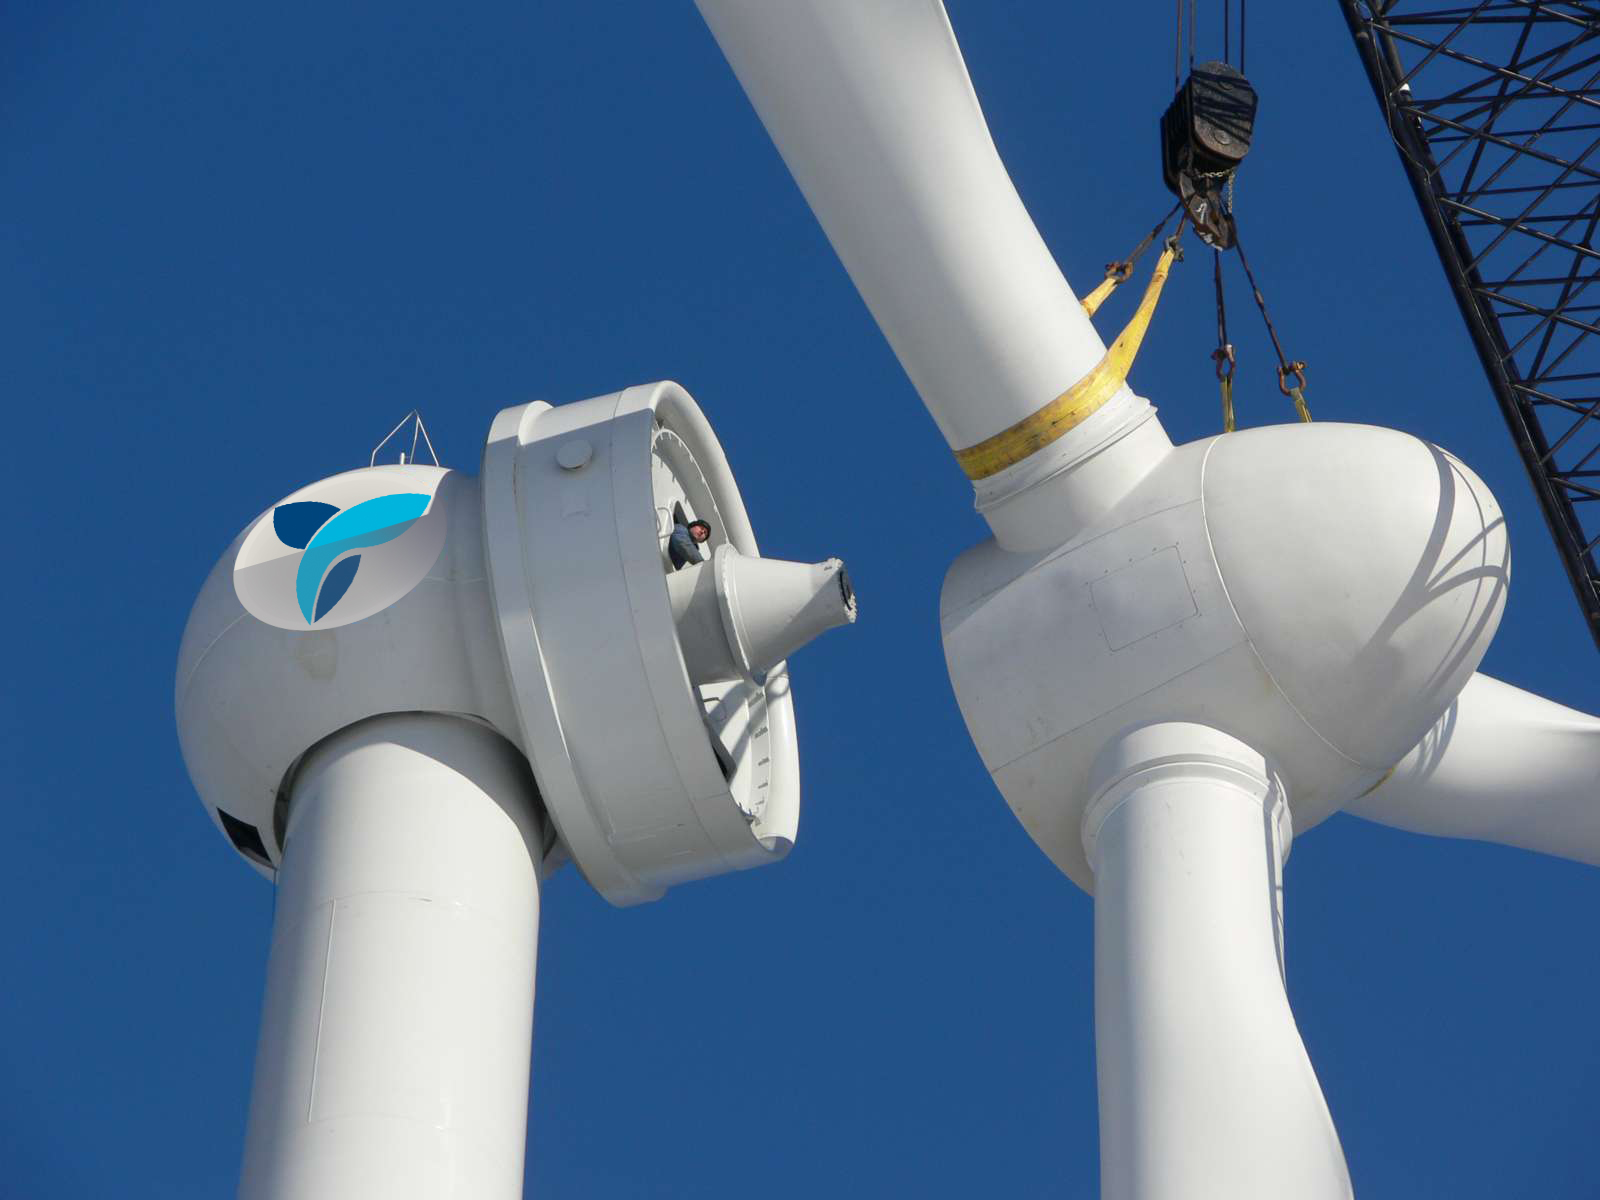 Energías renovables y eólica: Tesis sobre aerogeneradores en los parques eólicos